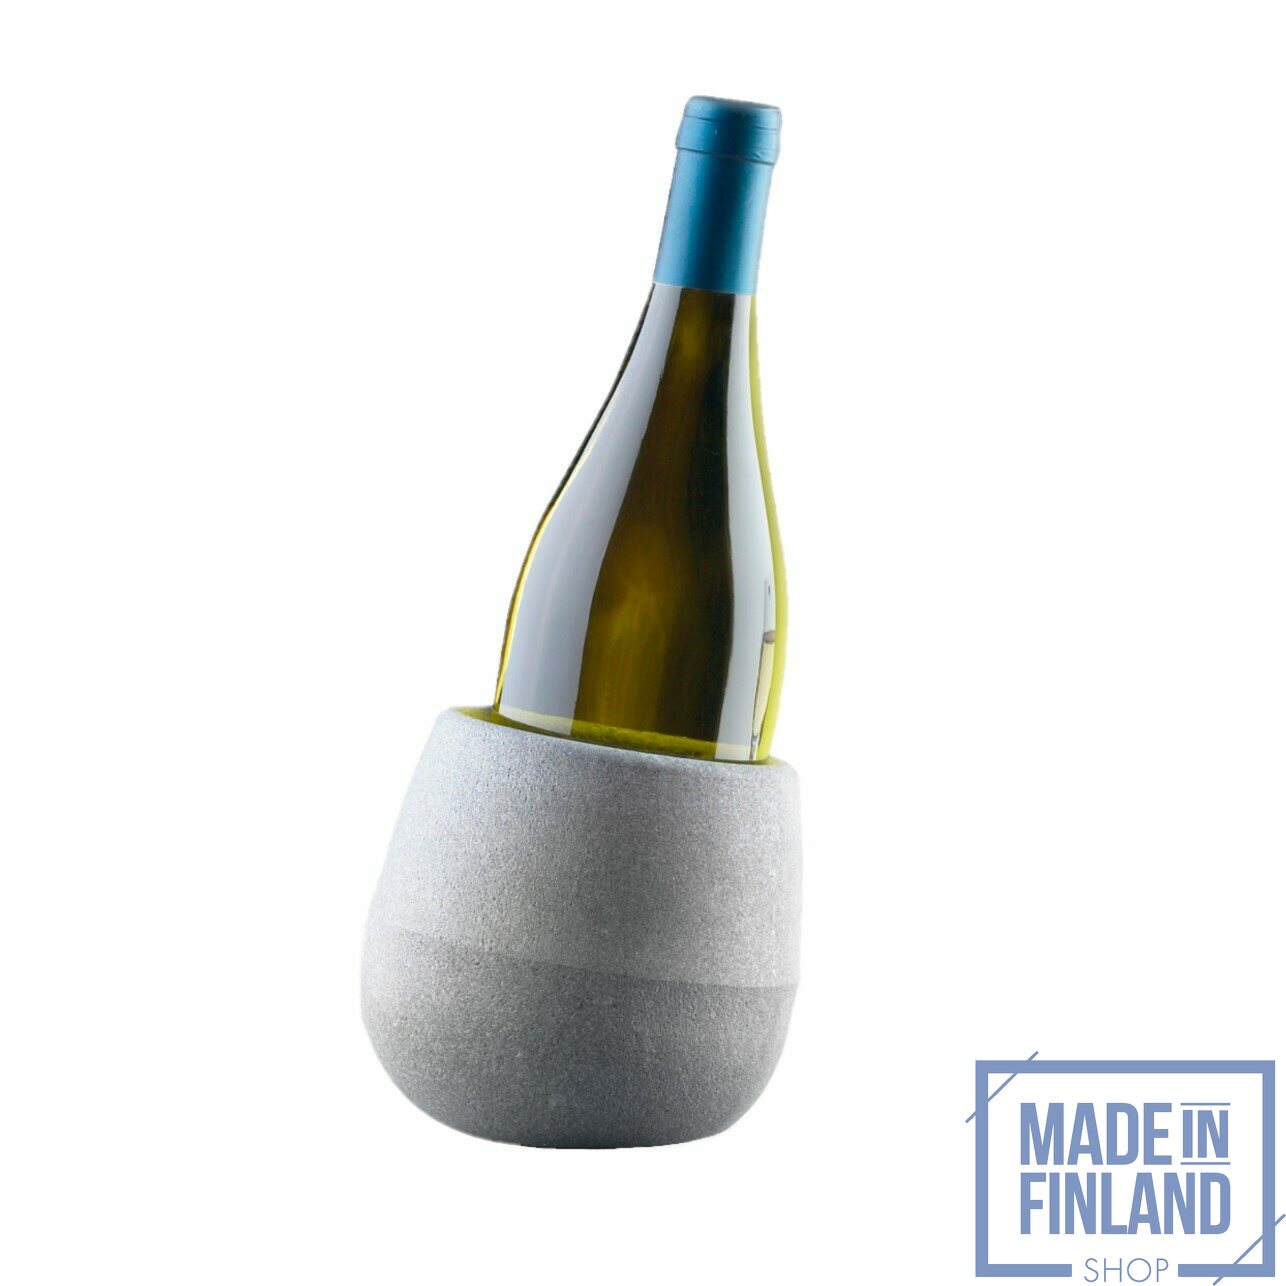 leven paddestoel aantal Hukka Design Kuohu wijnkoeler | Dienbladen en serveren | Made in Finland  Shop Nederlands